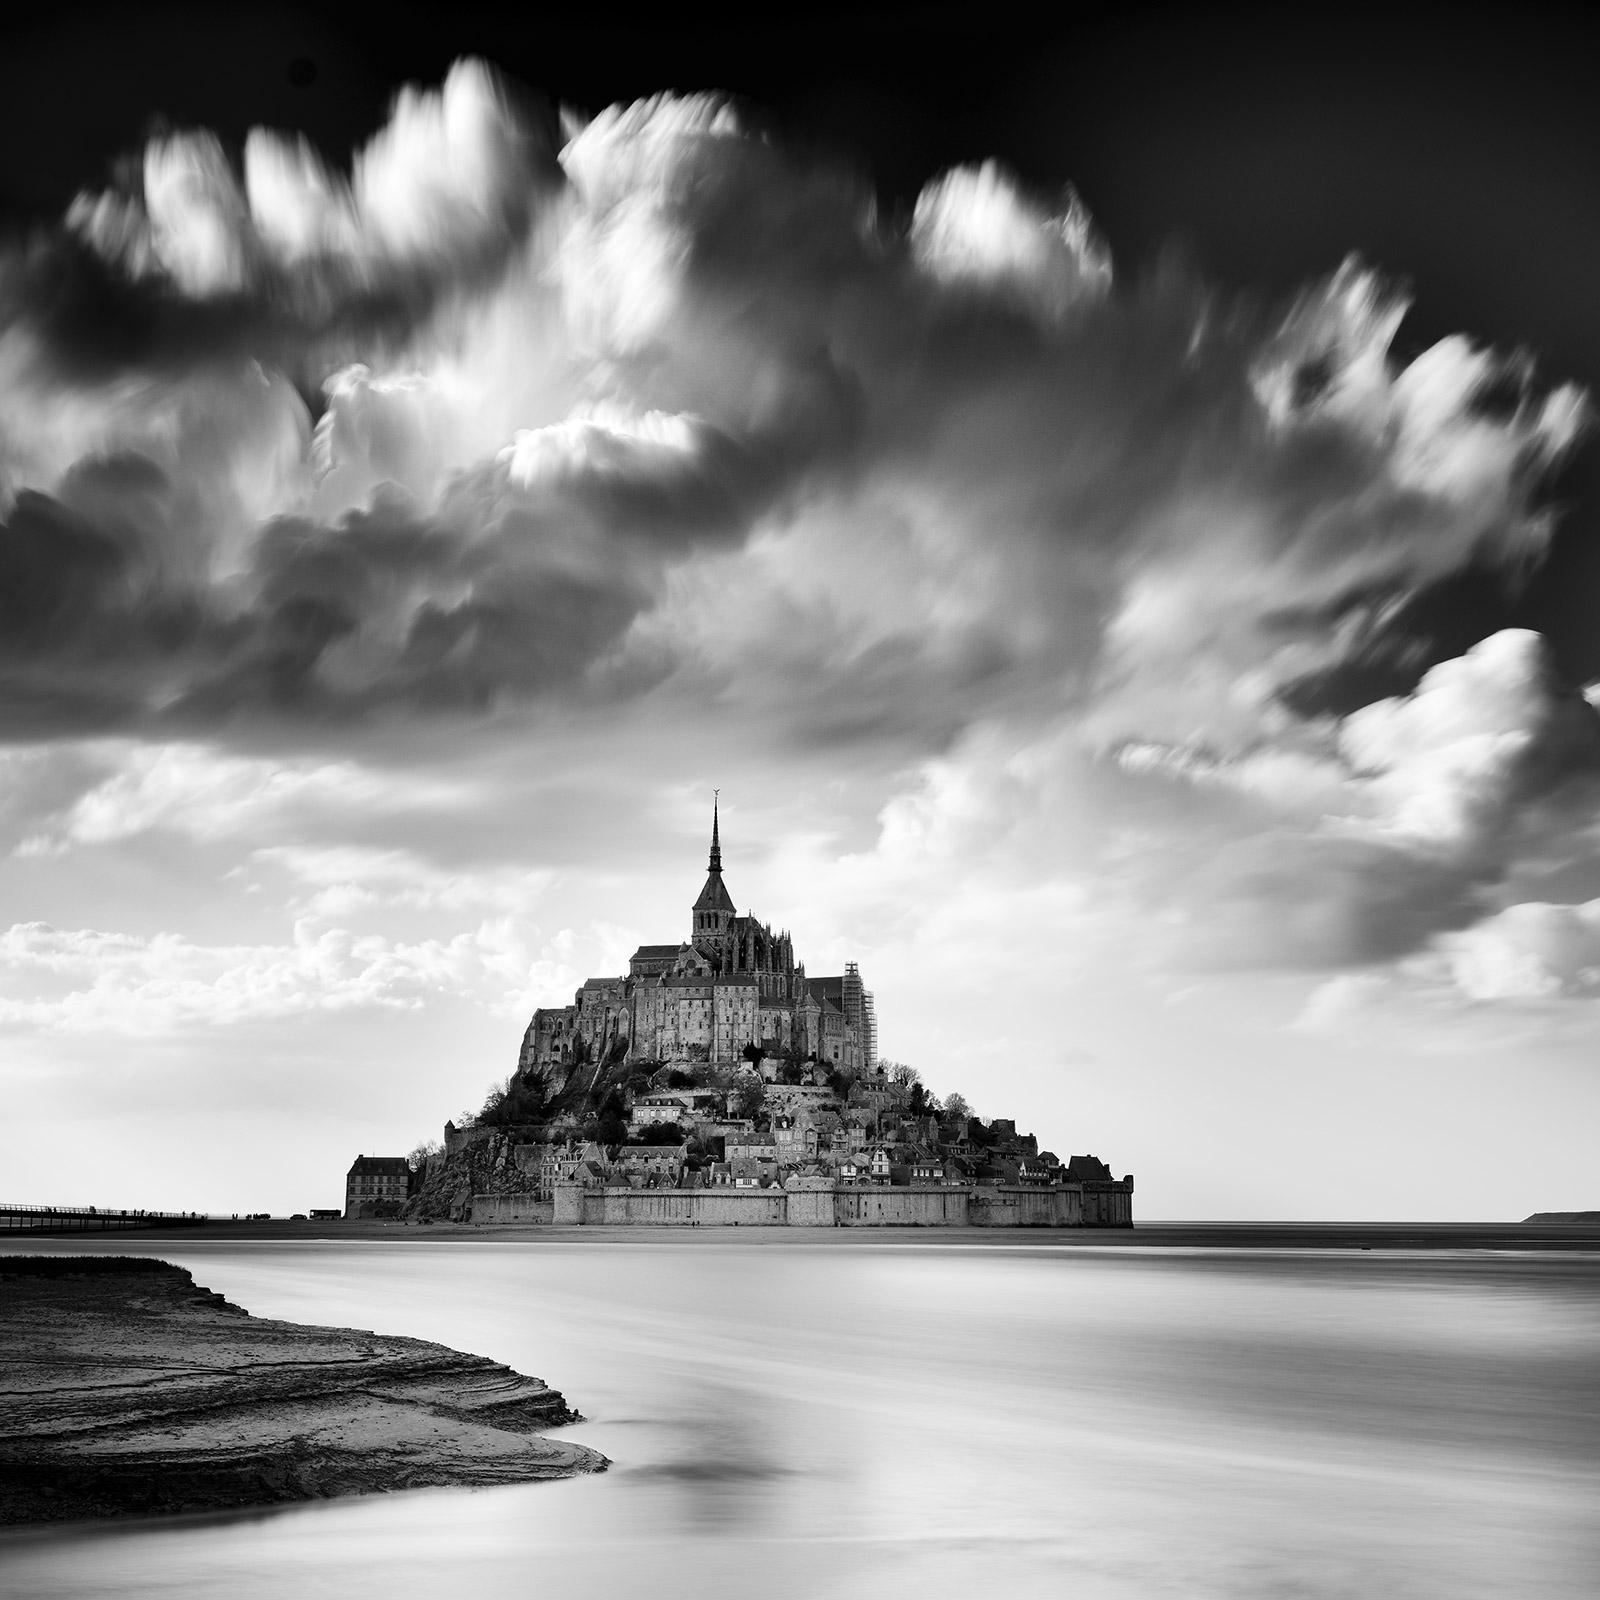 Mont Saint Michel, Impression Cloud, France, black and white art photography